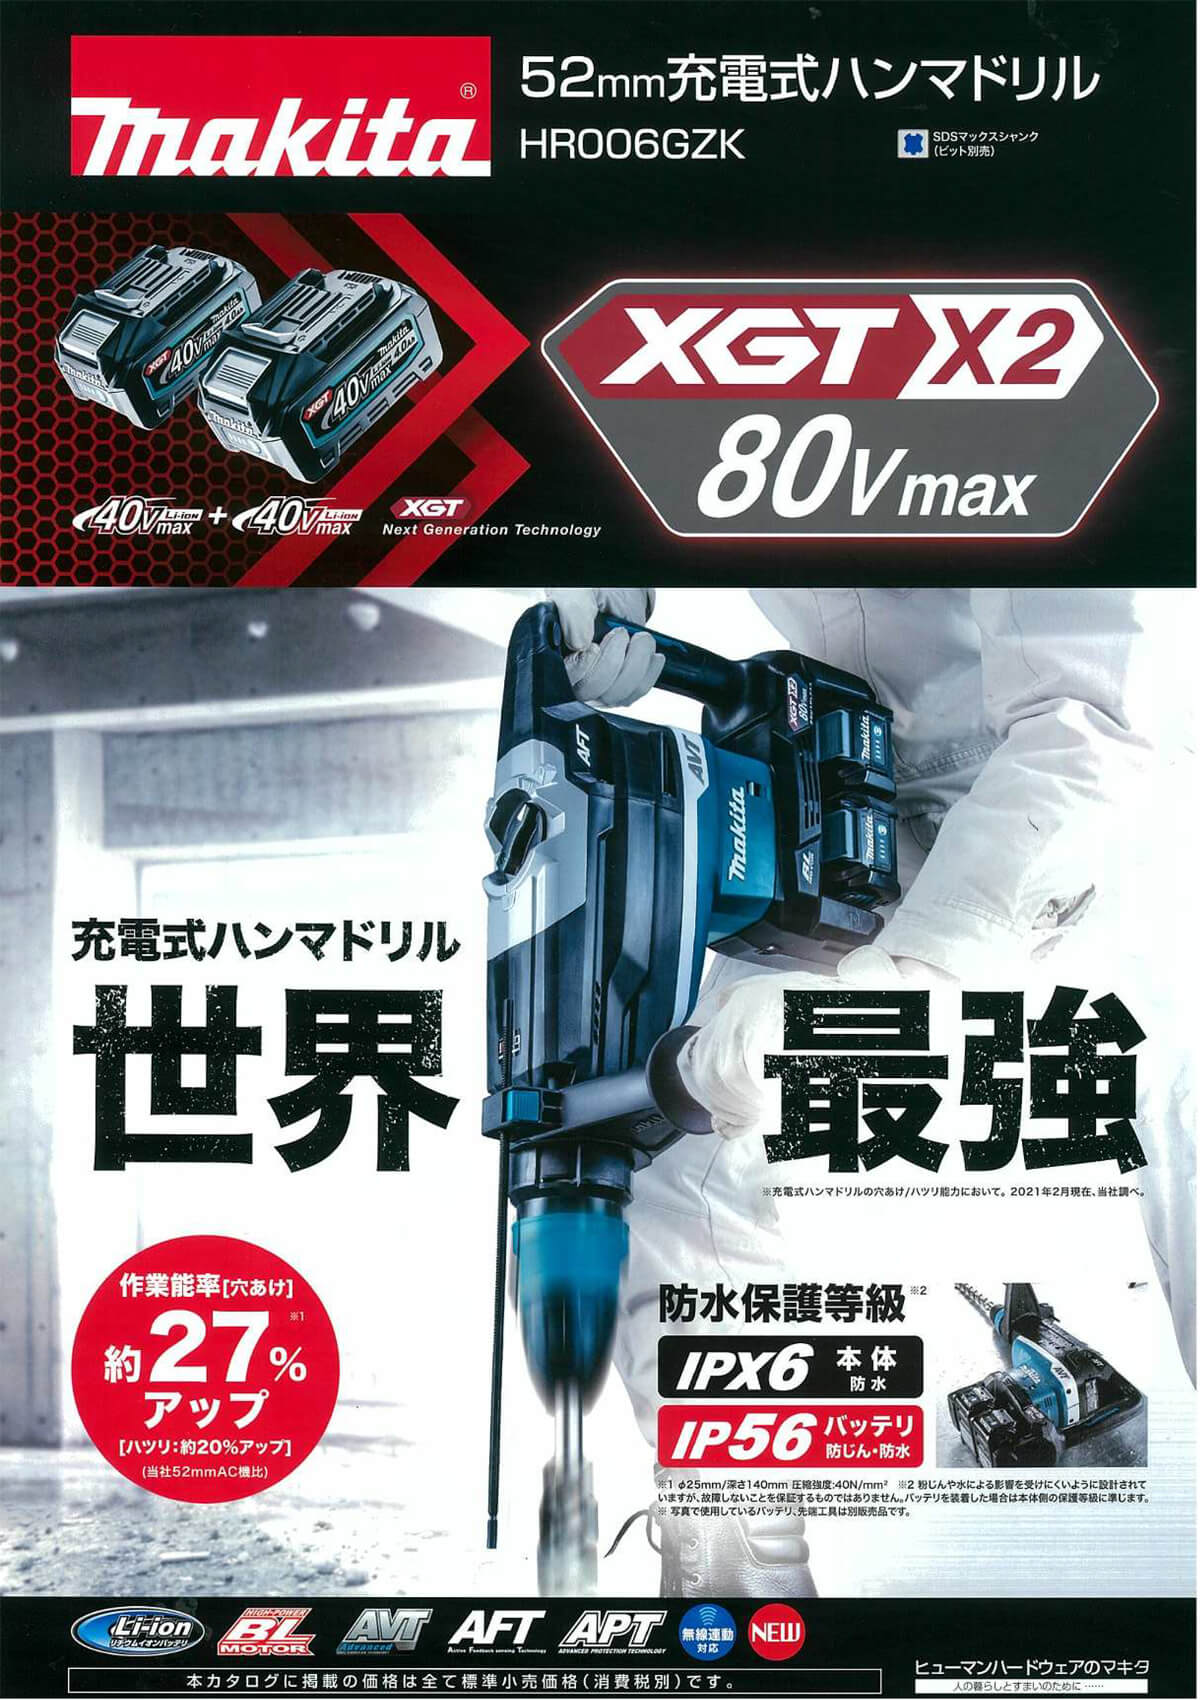 マキタ HR006GZK 80Vmax充電式ハンマドリル52mm(本体・ケース付/バッテリ・充電器別売) ウエダ金物【公式サイト】